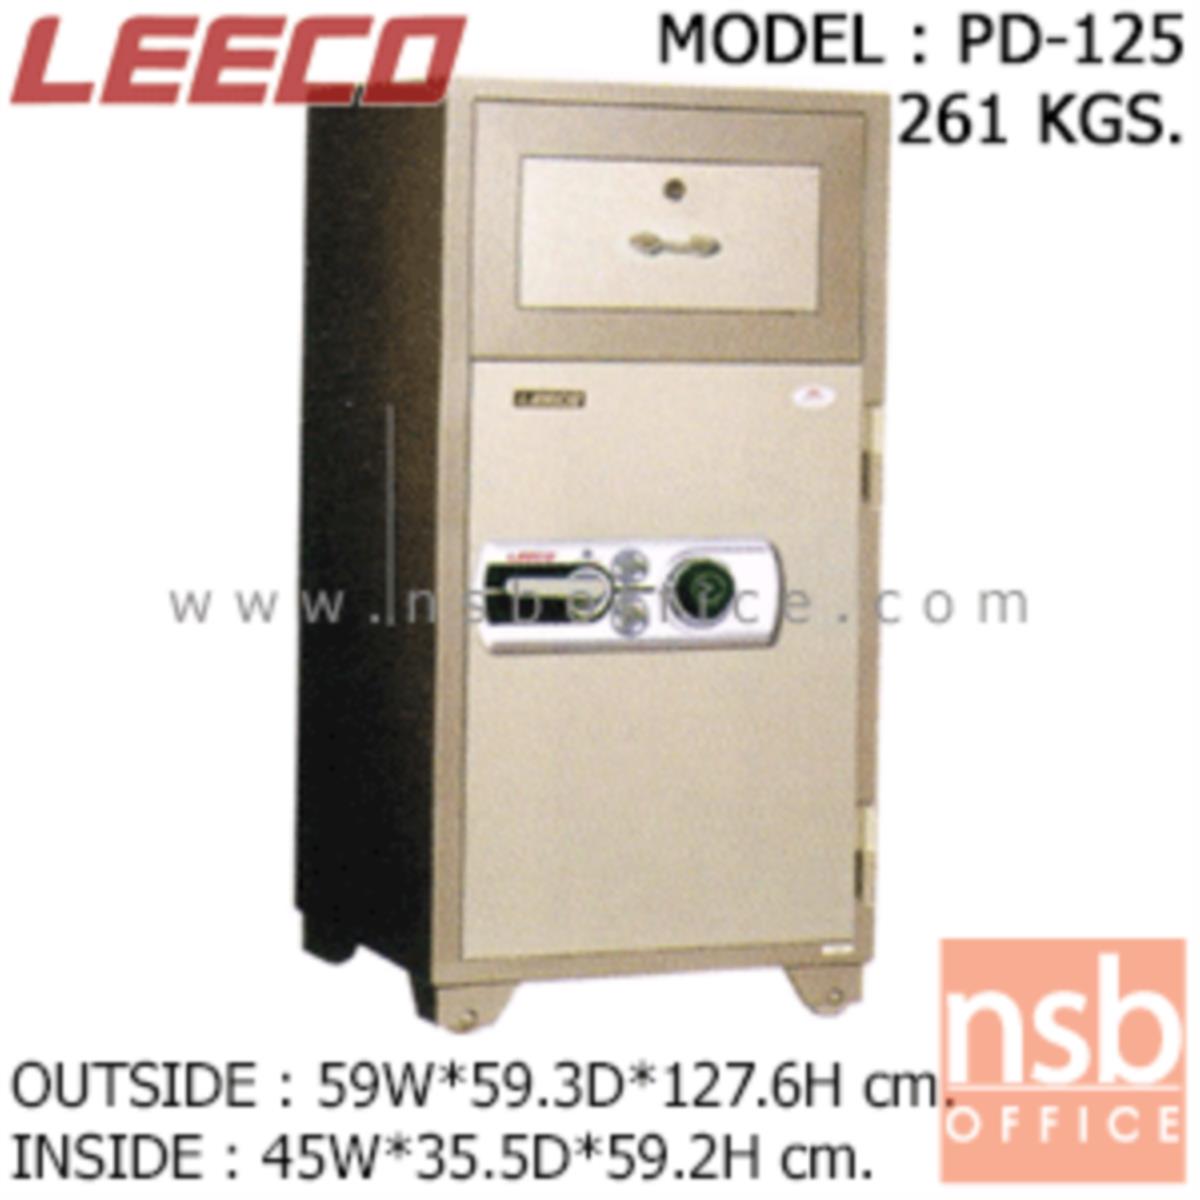 ตู้เซฟแคชเชียร์ 261 กก. ลีโก้ รุ่น LEECO-PD-125 มี 2 กุญแจ 1 รหัส (เปลี่ยนรหัสได้)   